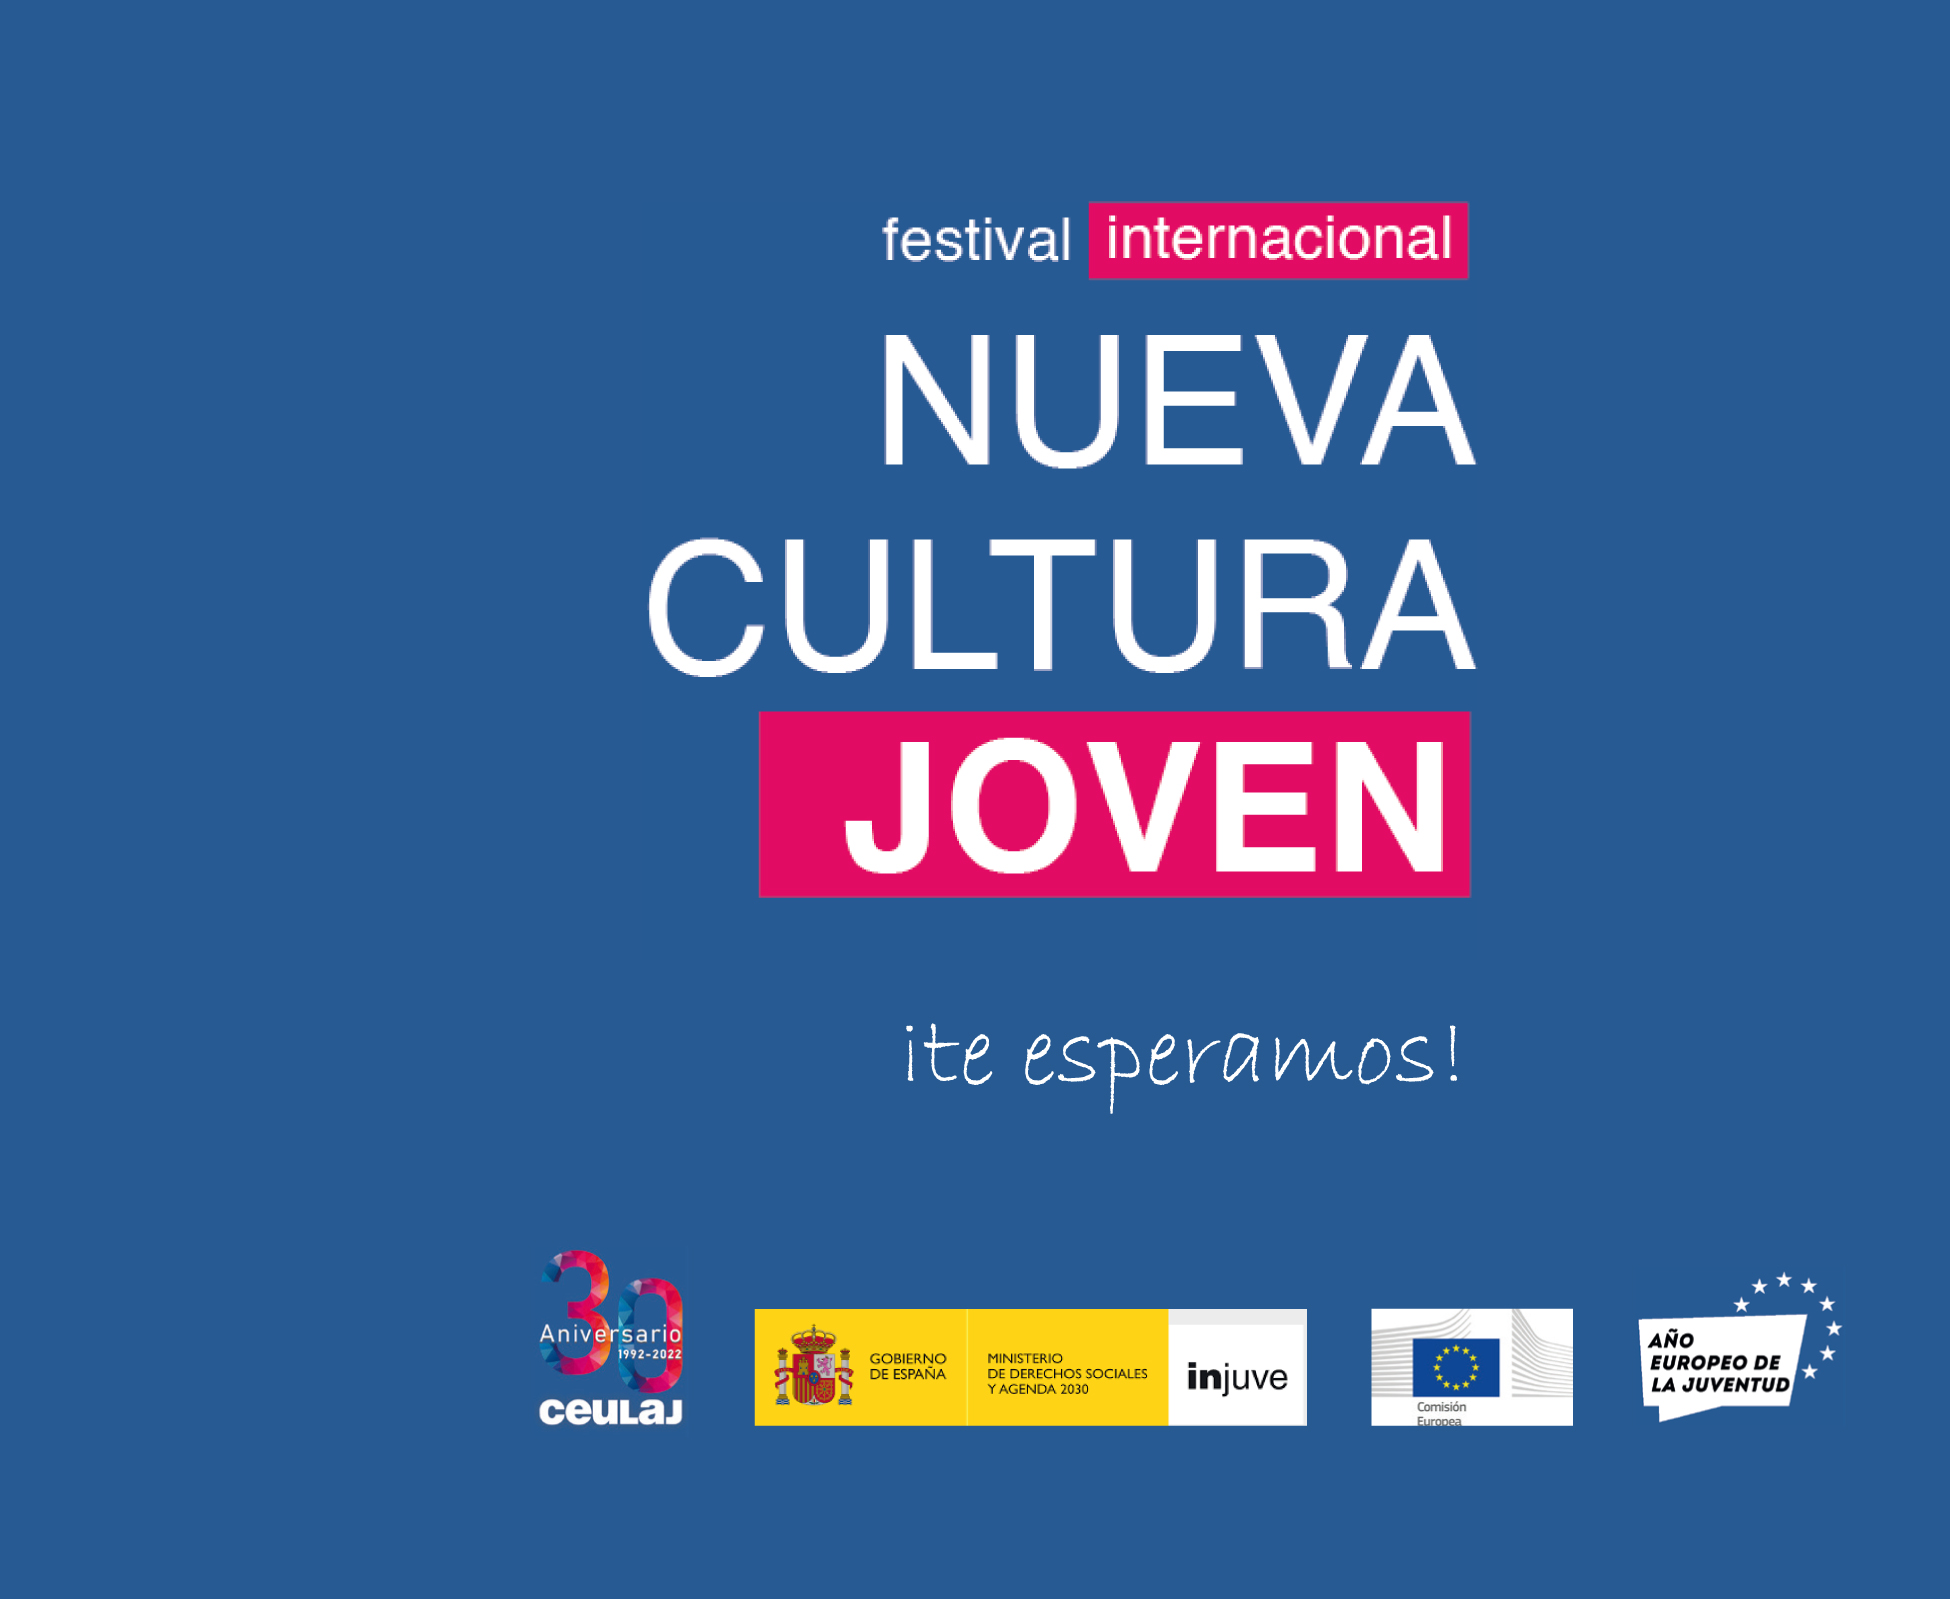 Cartel con los logos de Injuve, CEULAJ, Ministerio de Derechos Sociales, Comisión Europea y Agenda 2030 y Año Europeo de la Juventud